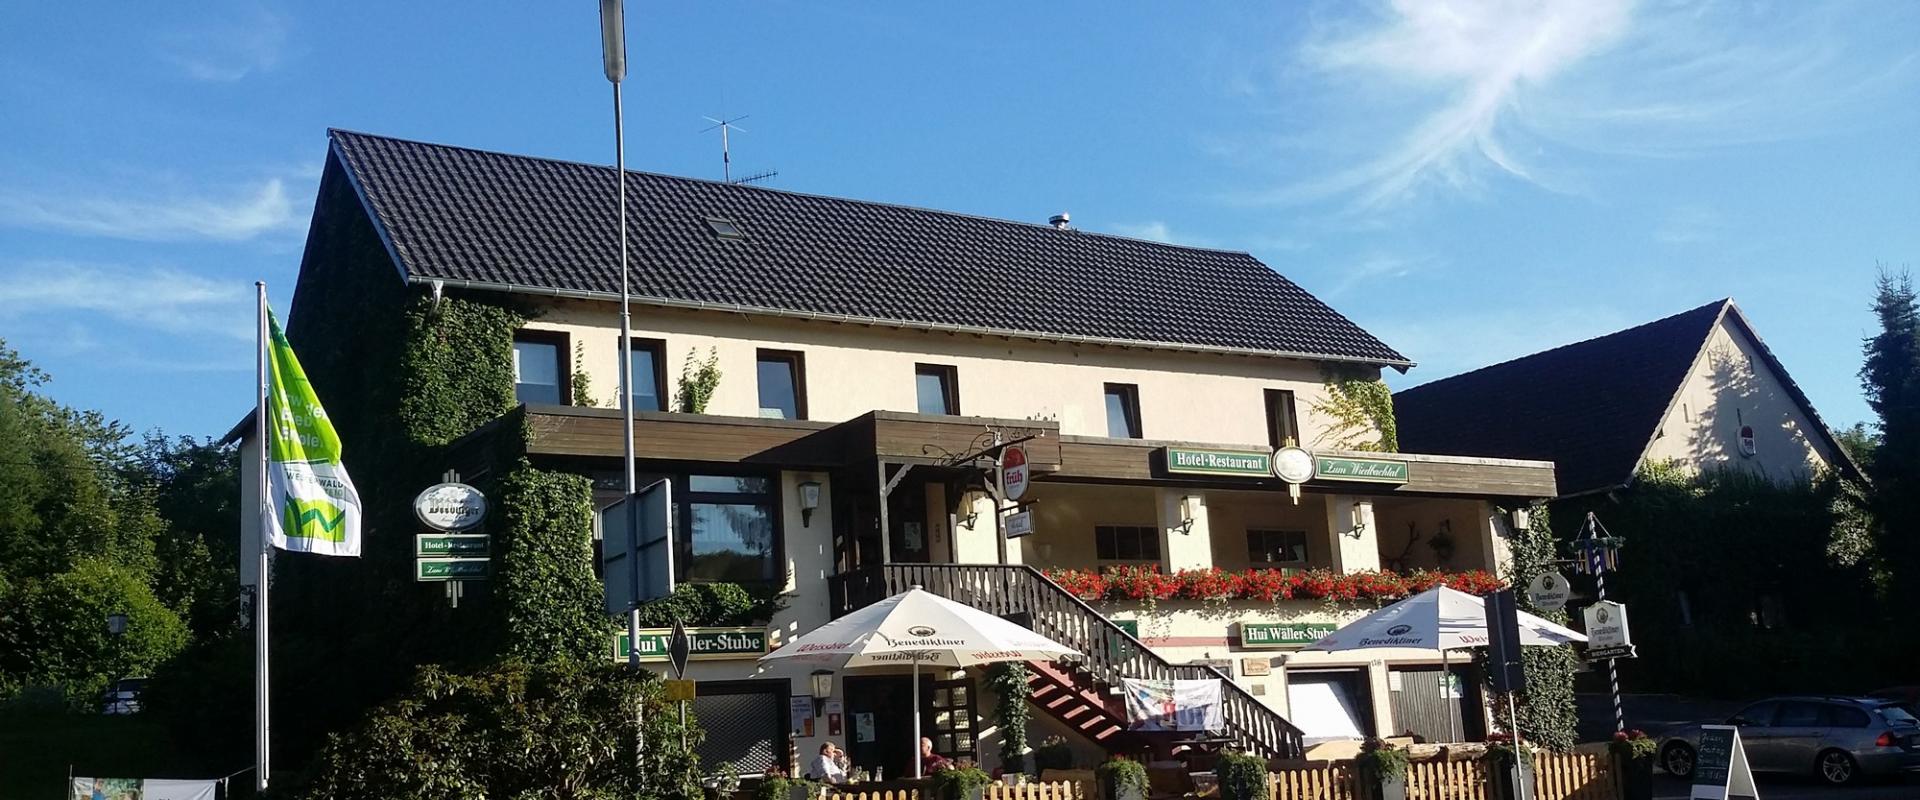 15939 Motorrad Hotel Zum Wiedbachtal im Westerwald/Belgischen Land.jpg